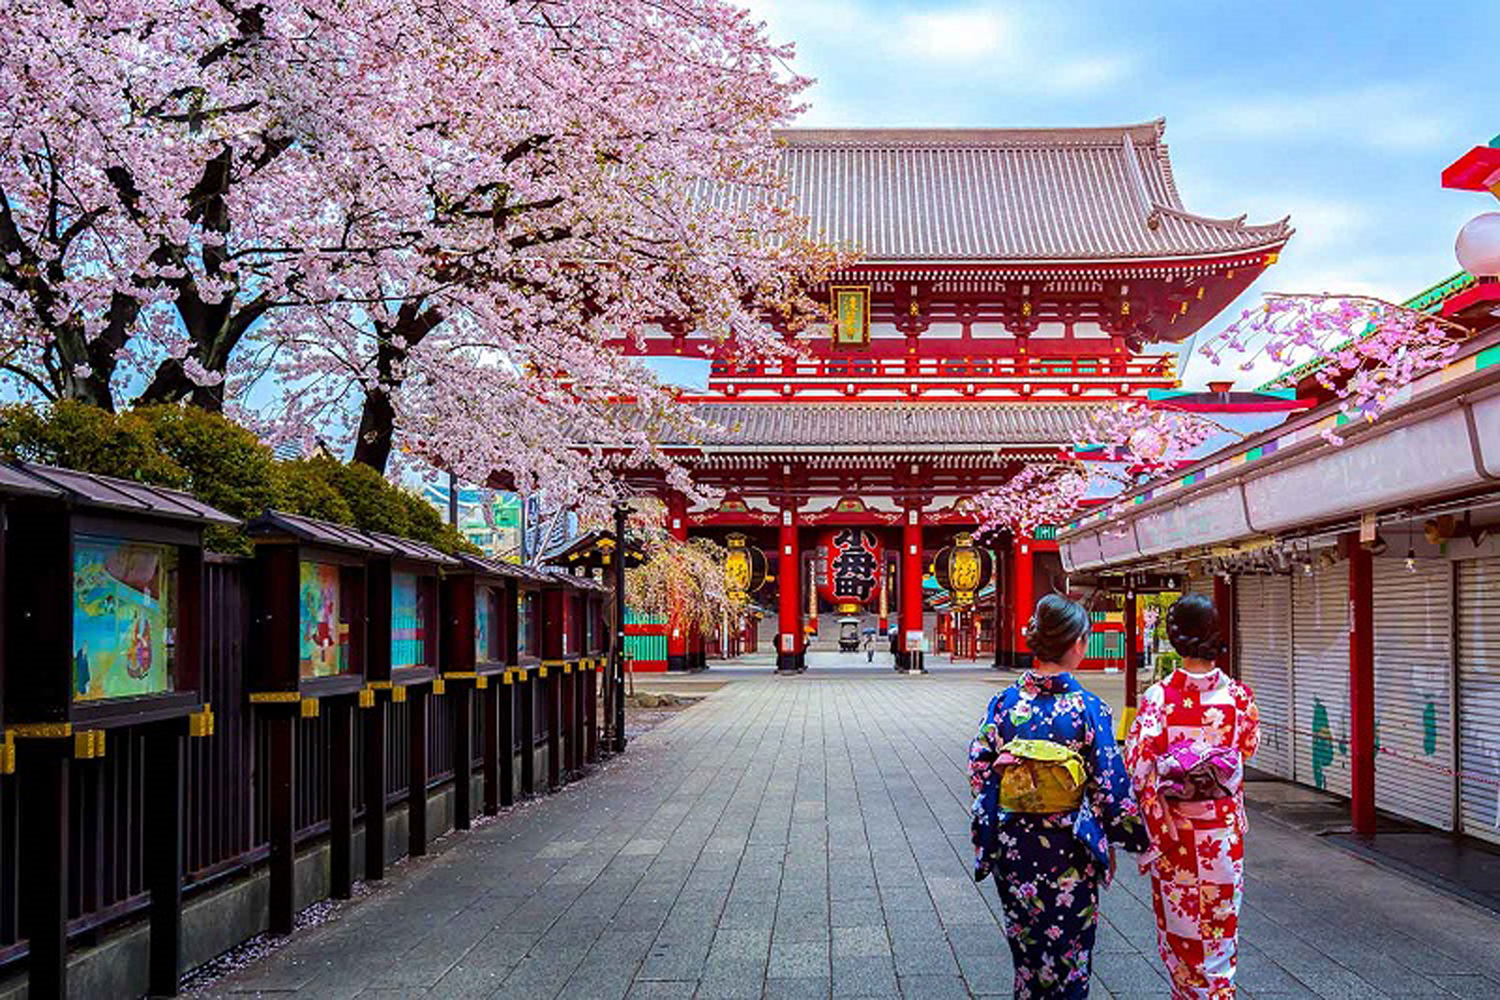 Du lịch Nhật Bản tự túc hết bao nhiêu tiền?